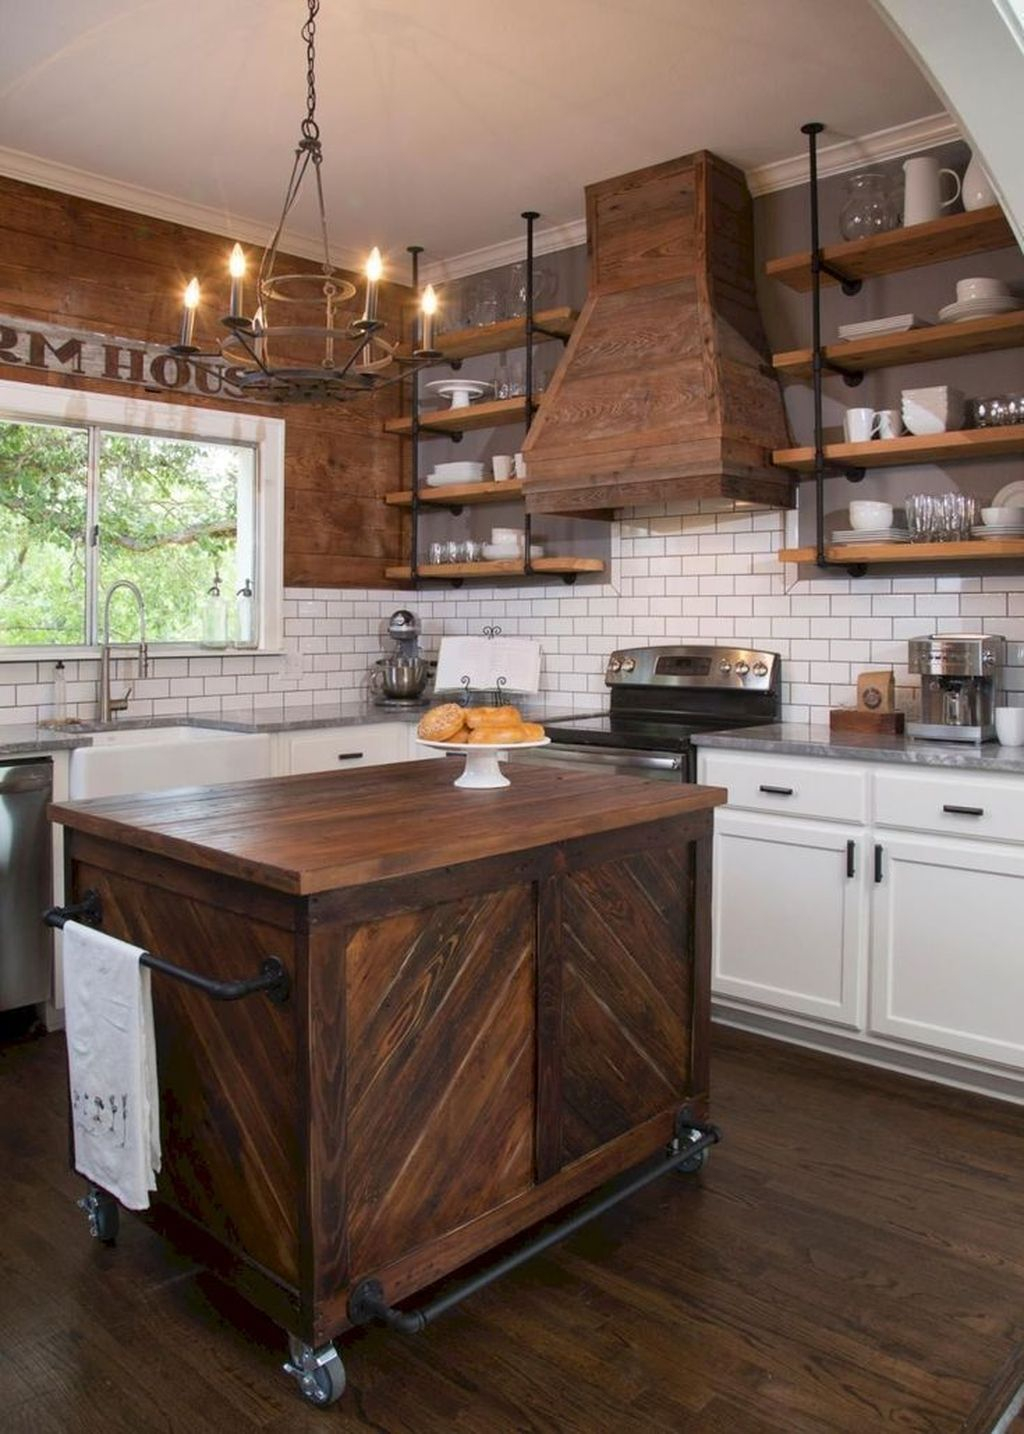 Wonderful Industrial Kitchen Shelf Design Ideas To Organize Your Kitchen27